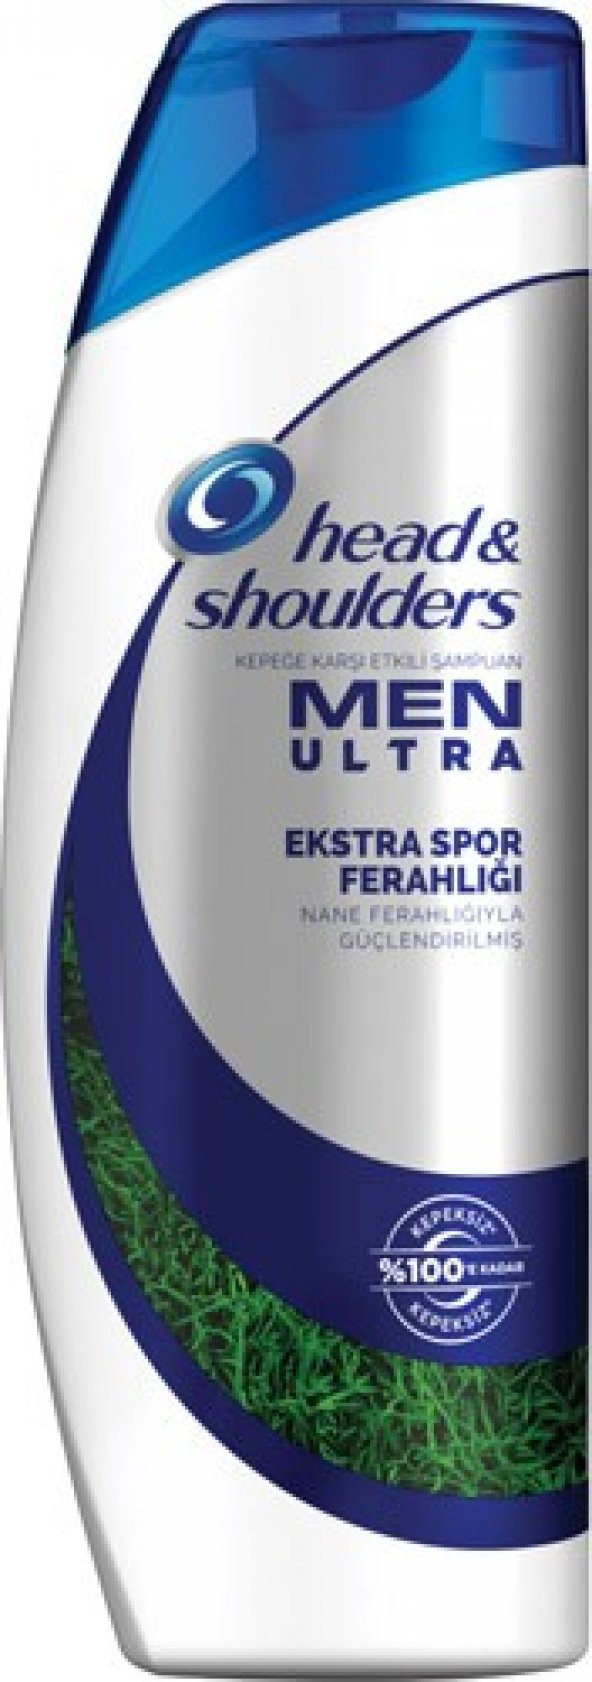 Head & Shoulders Men Ultra Erkeklere Özel Şampuan